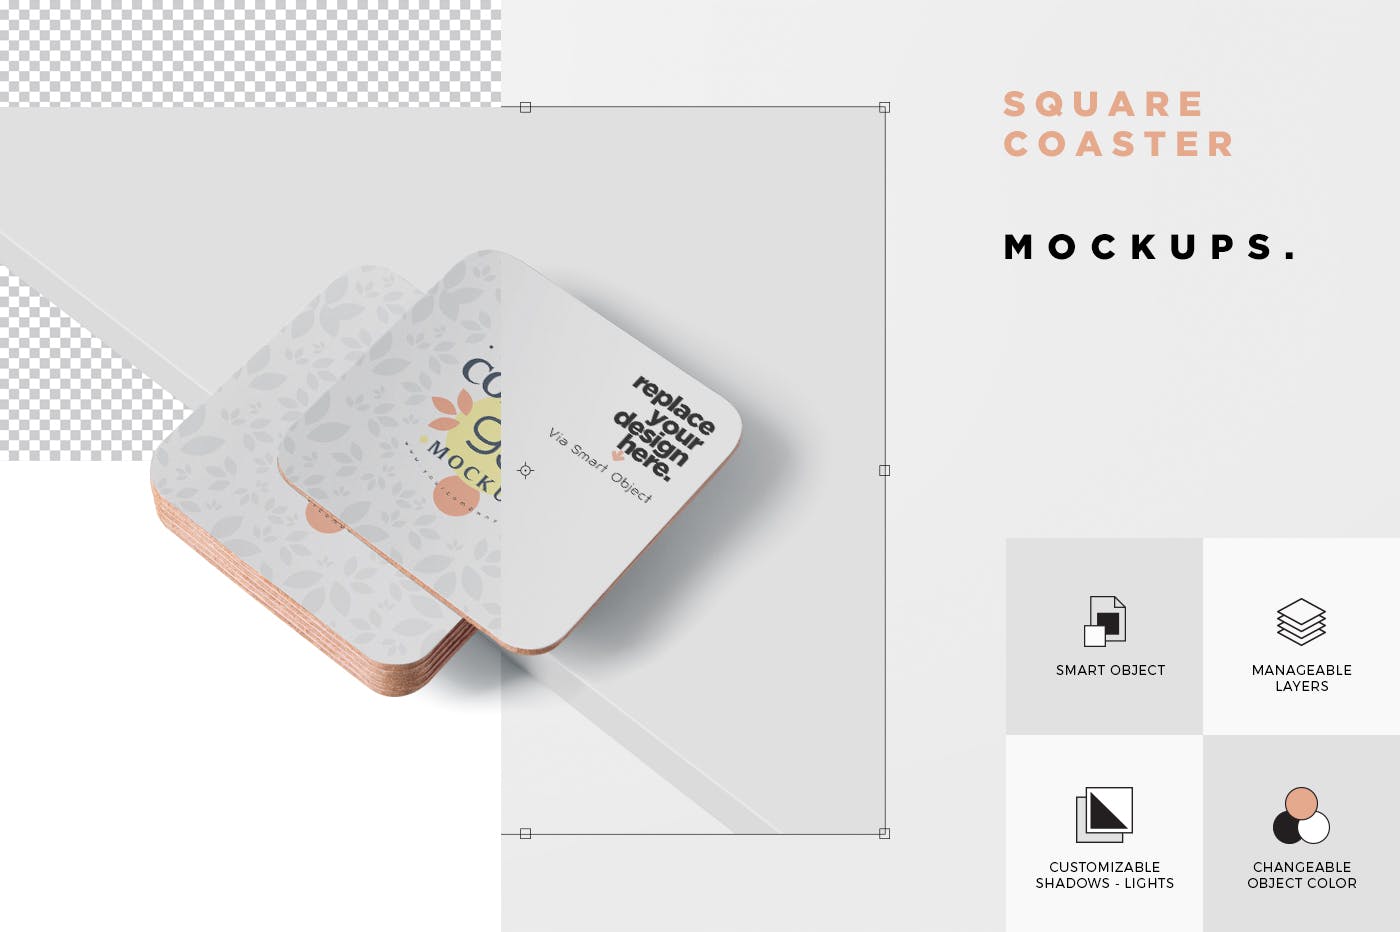 圆角方形杯垫图案设计蚂蚁素材精选模板 Square Coaster Mock-Up with Round Corner插图(5)